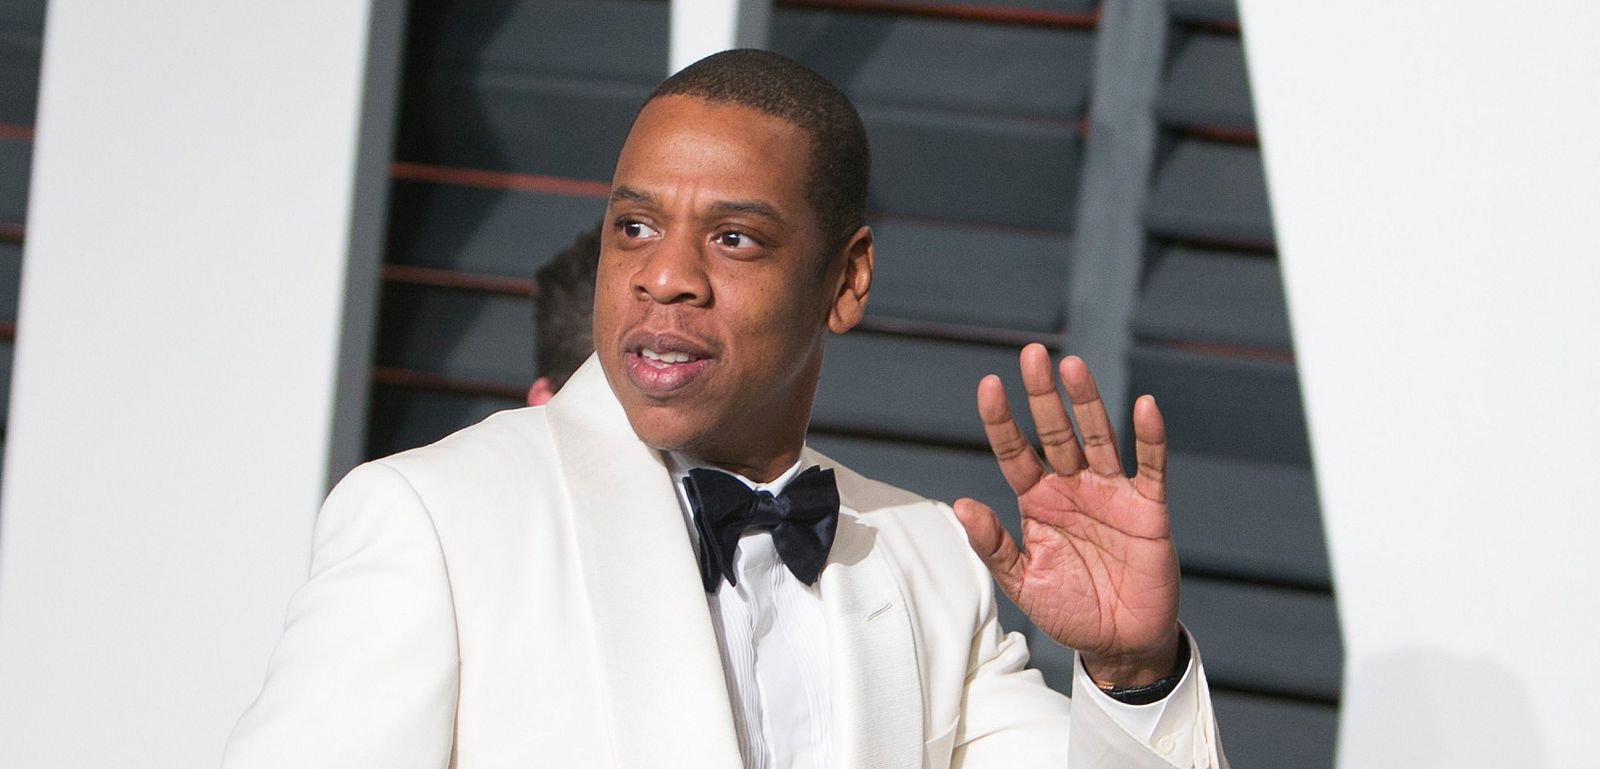 El rapero y productor Jay-Z, impulsor de la plataforma de música 'Tidal', en una imagen de archivo.